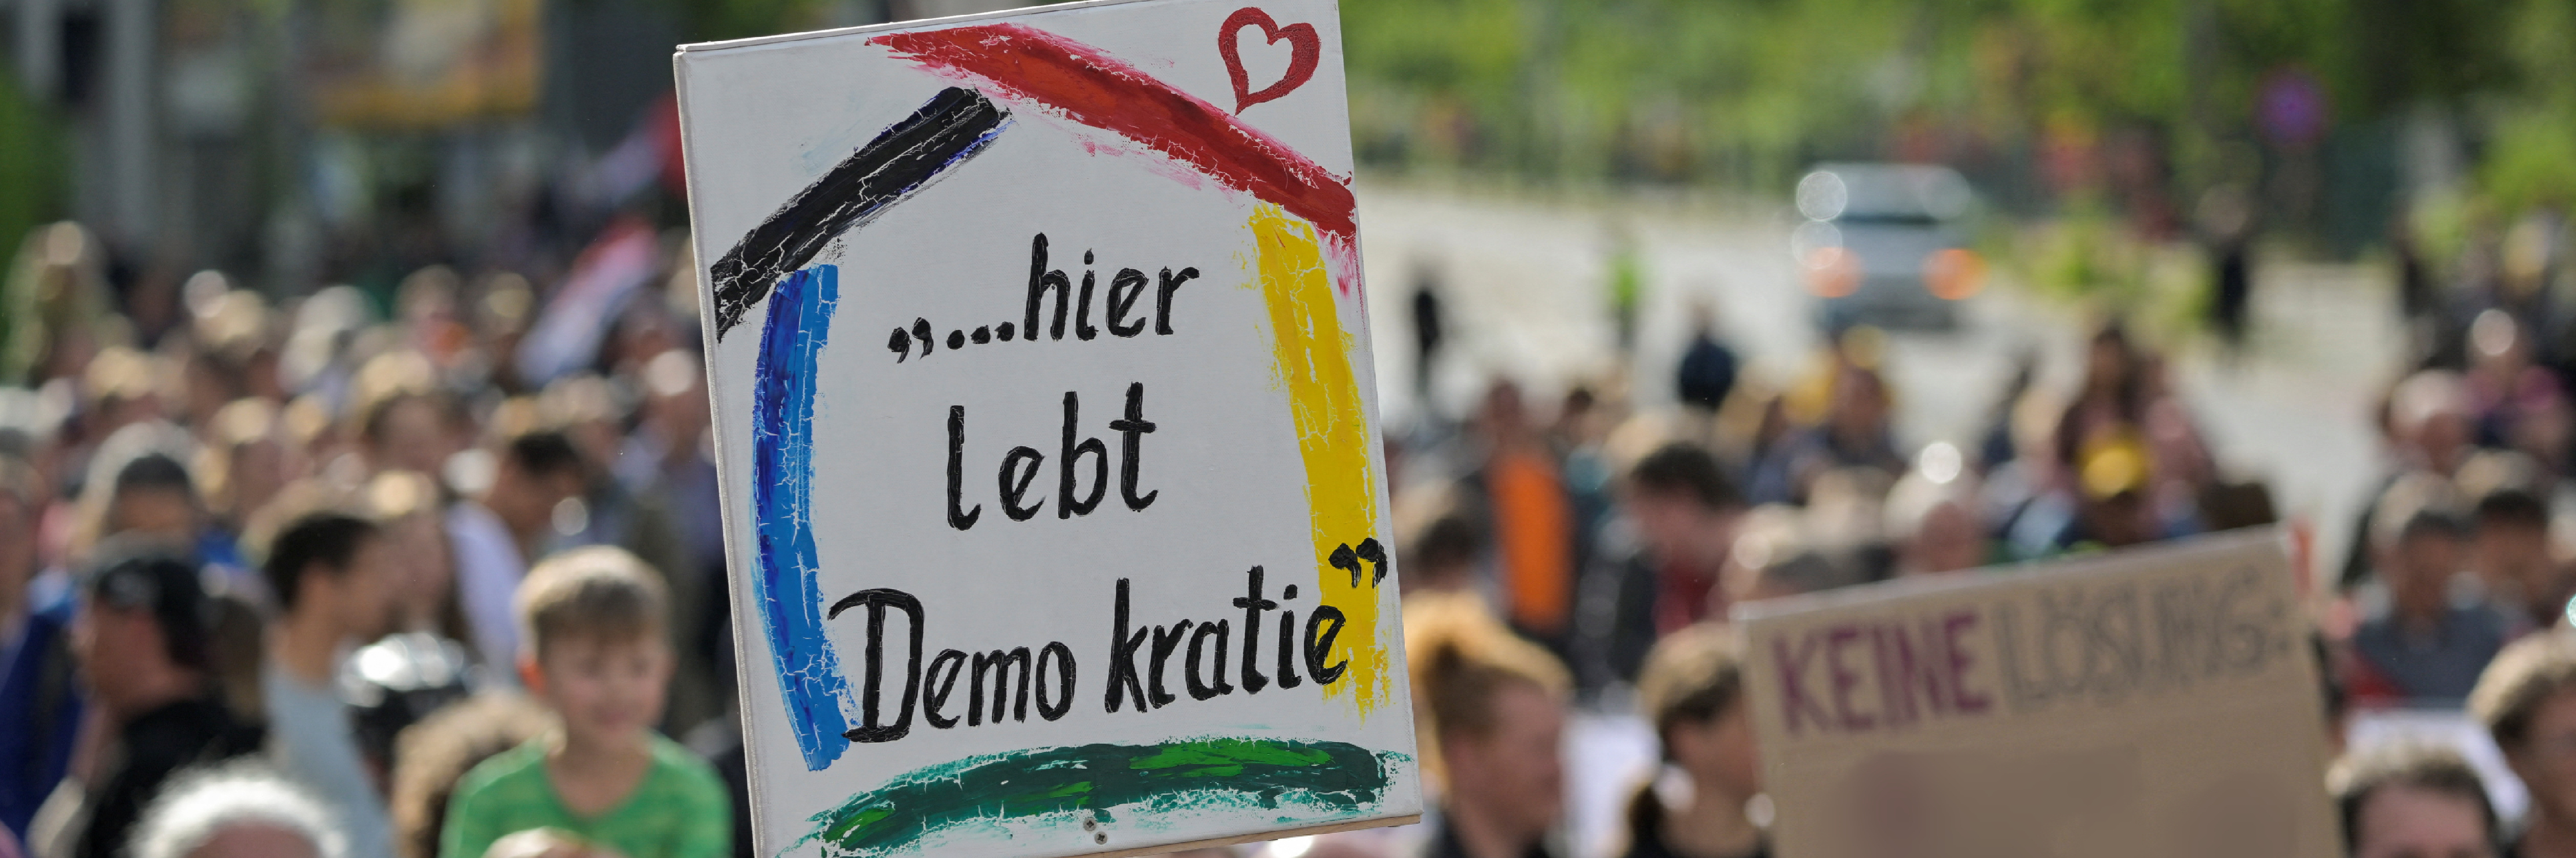 Demonstranten mit Plakat "Hier lebt Demokratie"